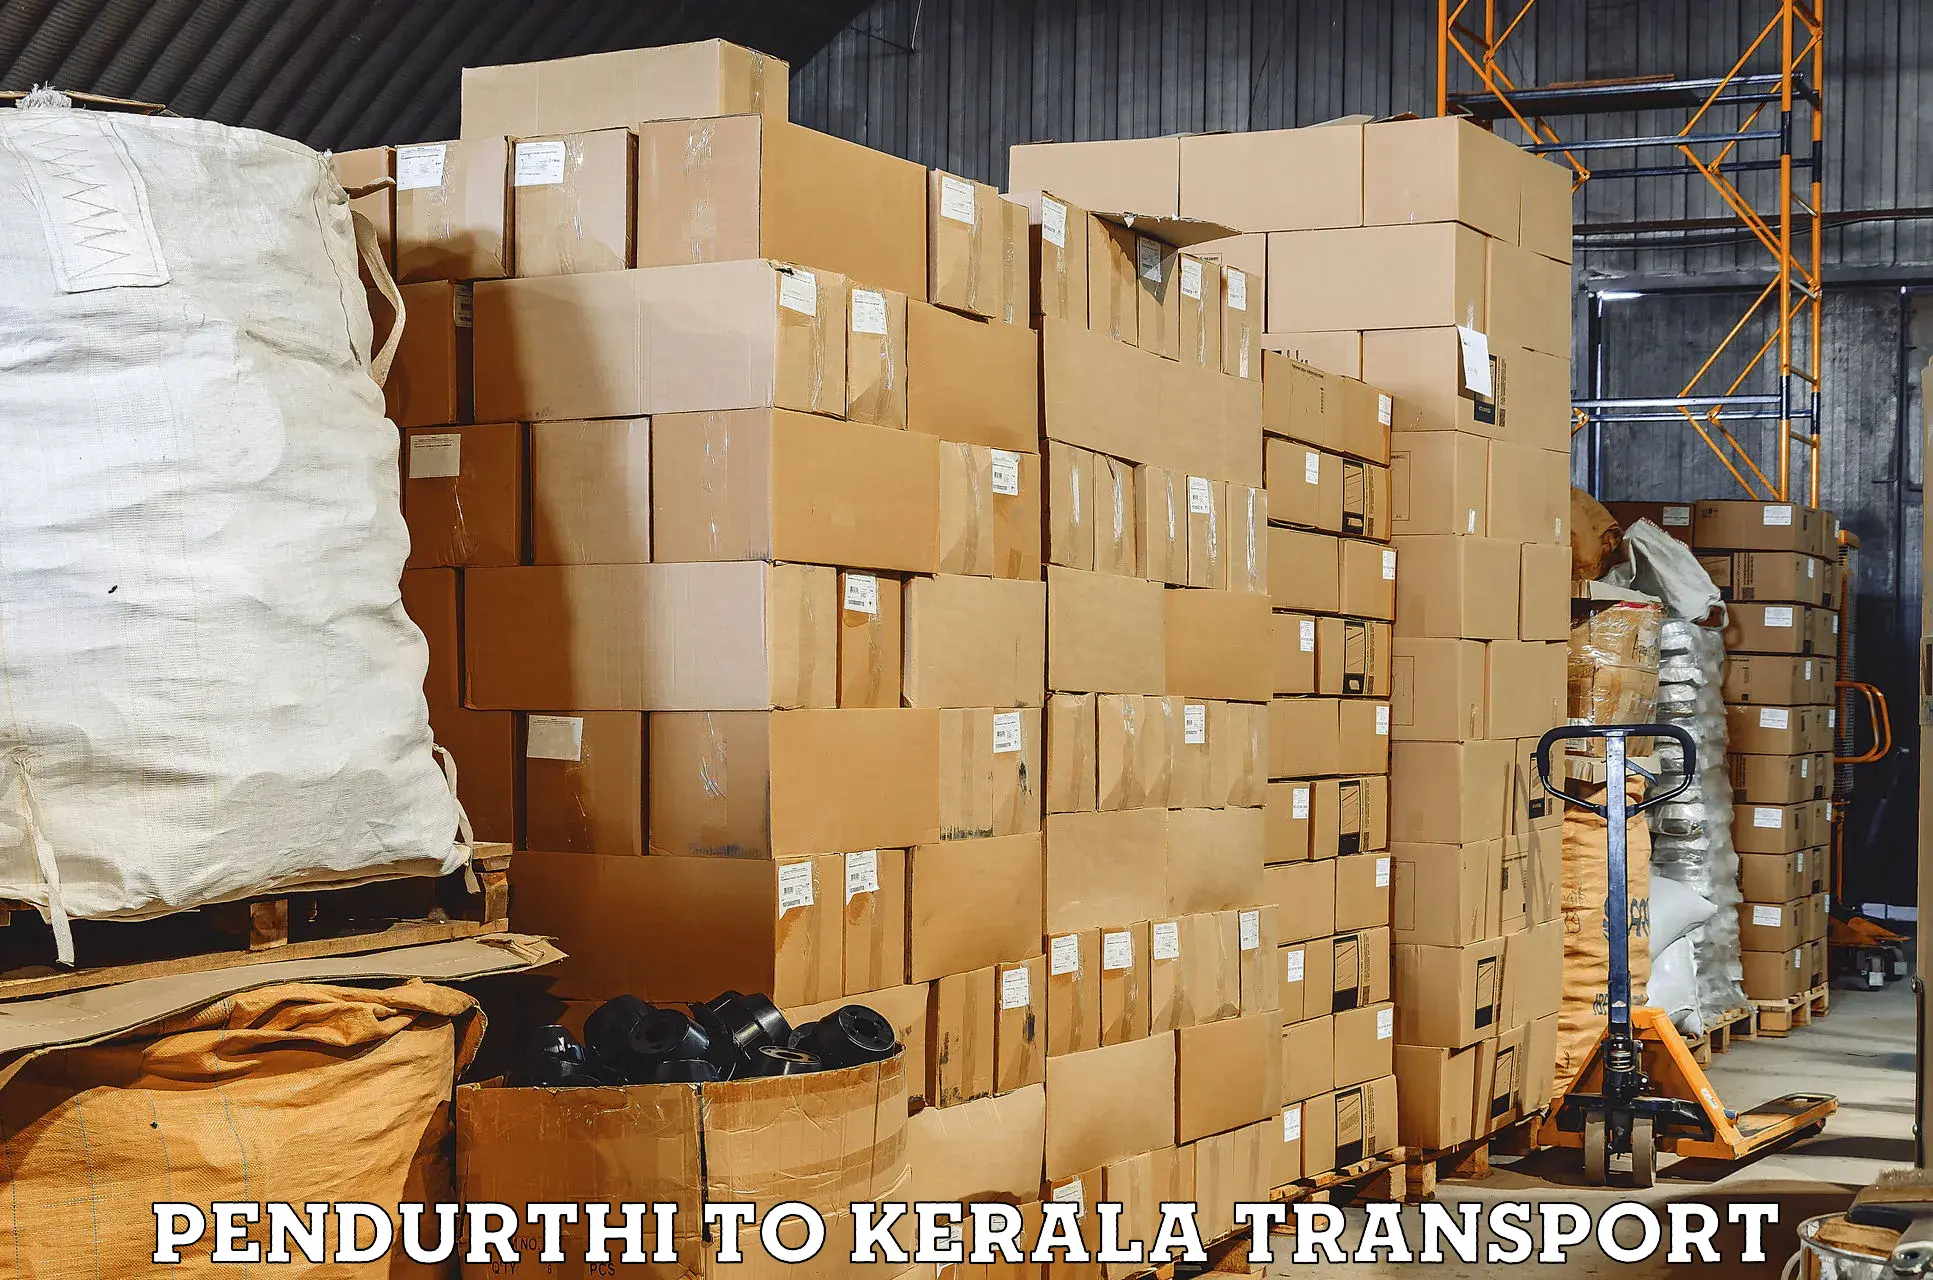 Transport in sharing Pendurthi to Panayathamparamba